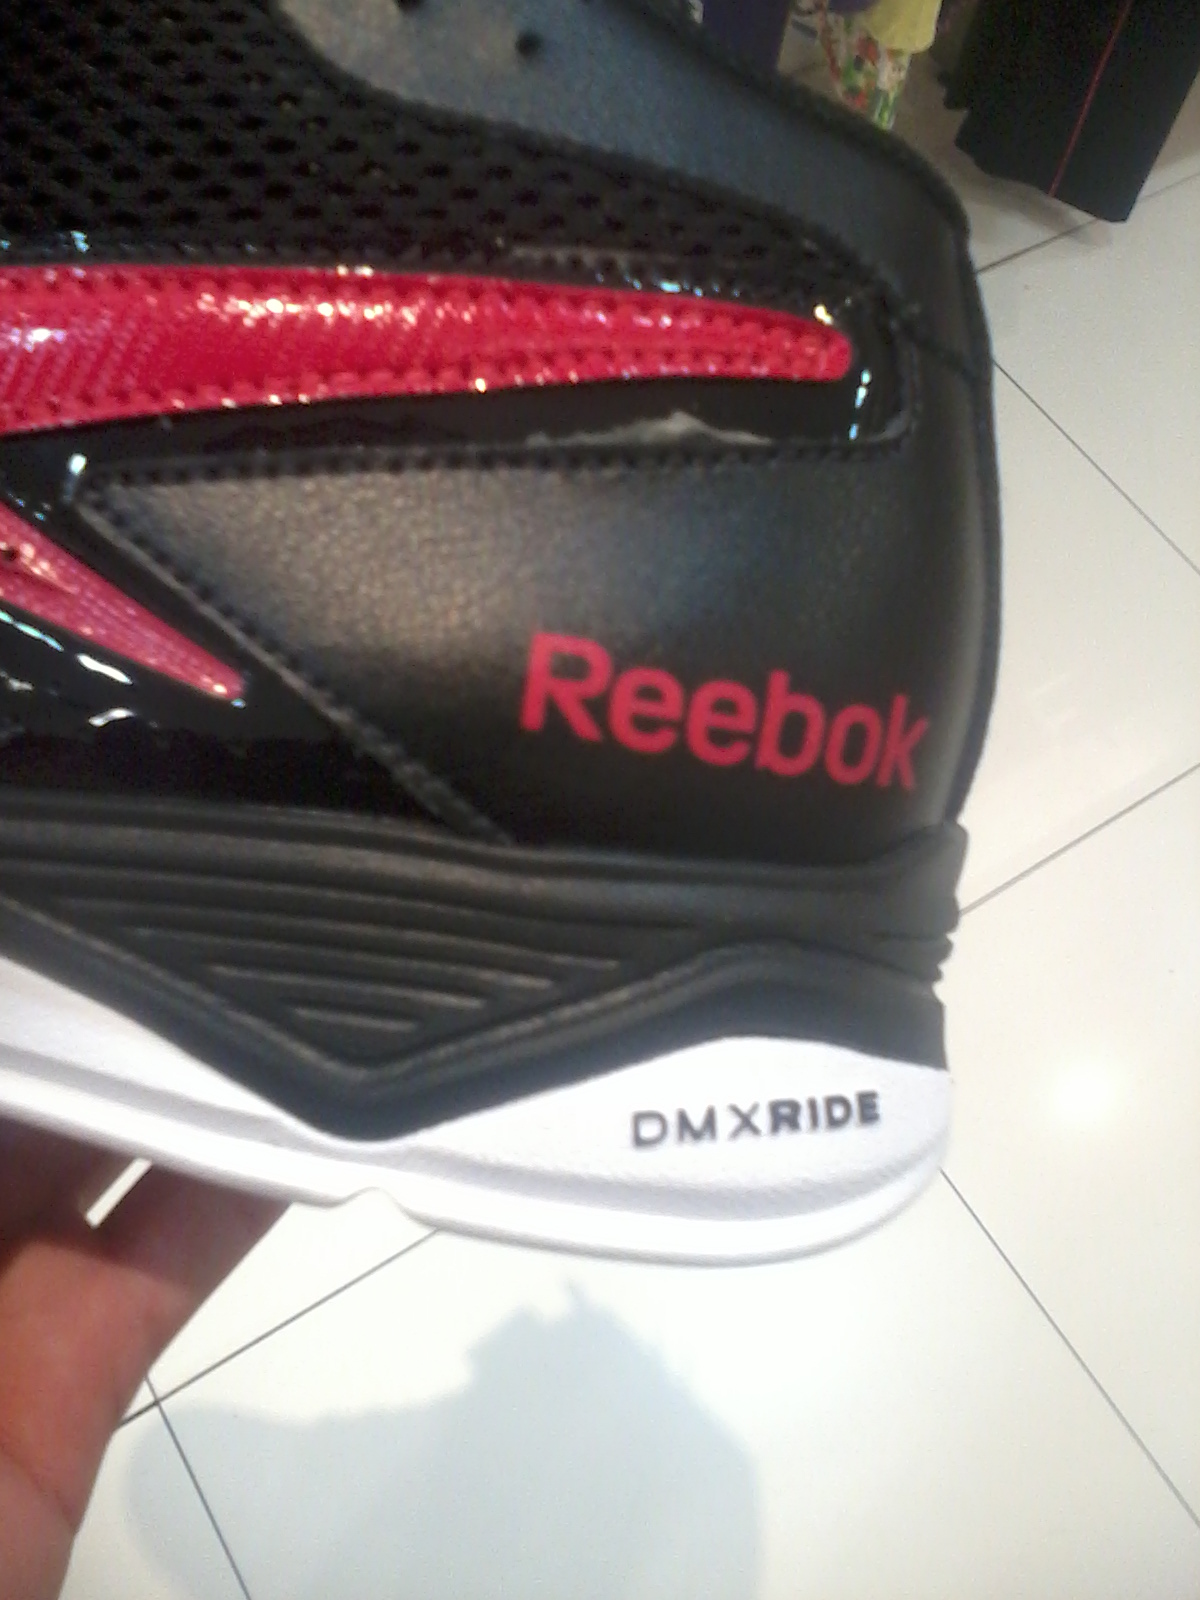 reebok shoes dmx ride